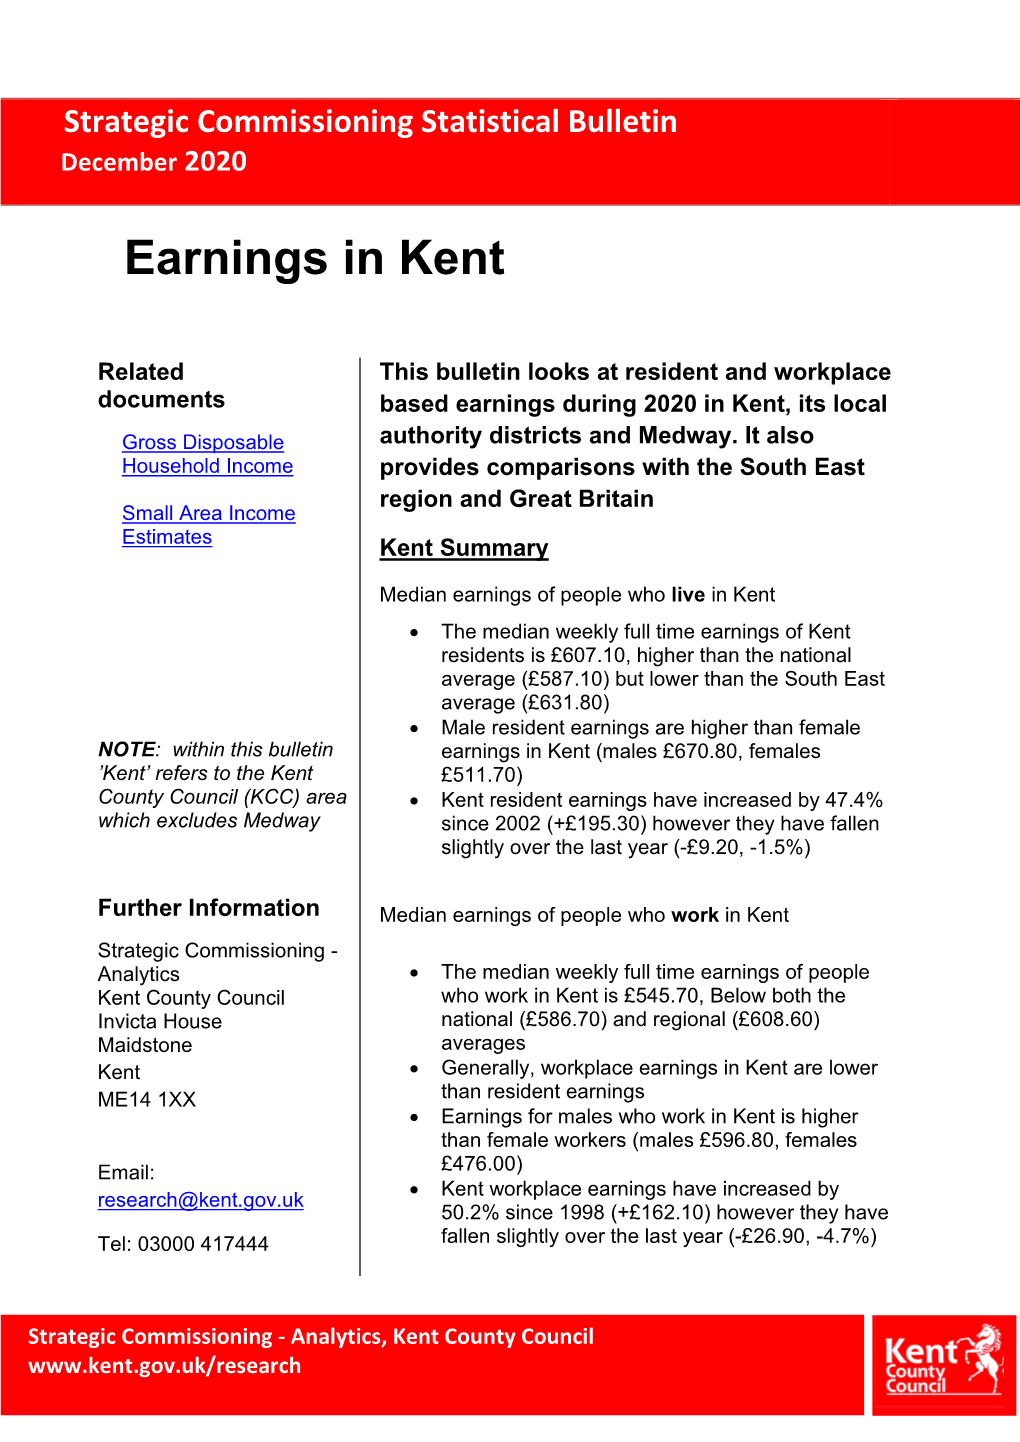 Earnings in Kent